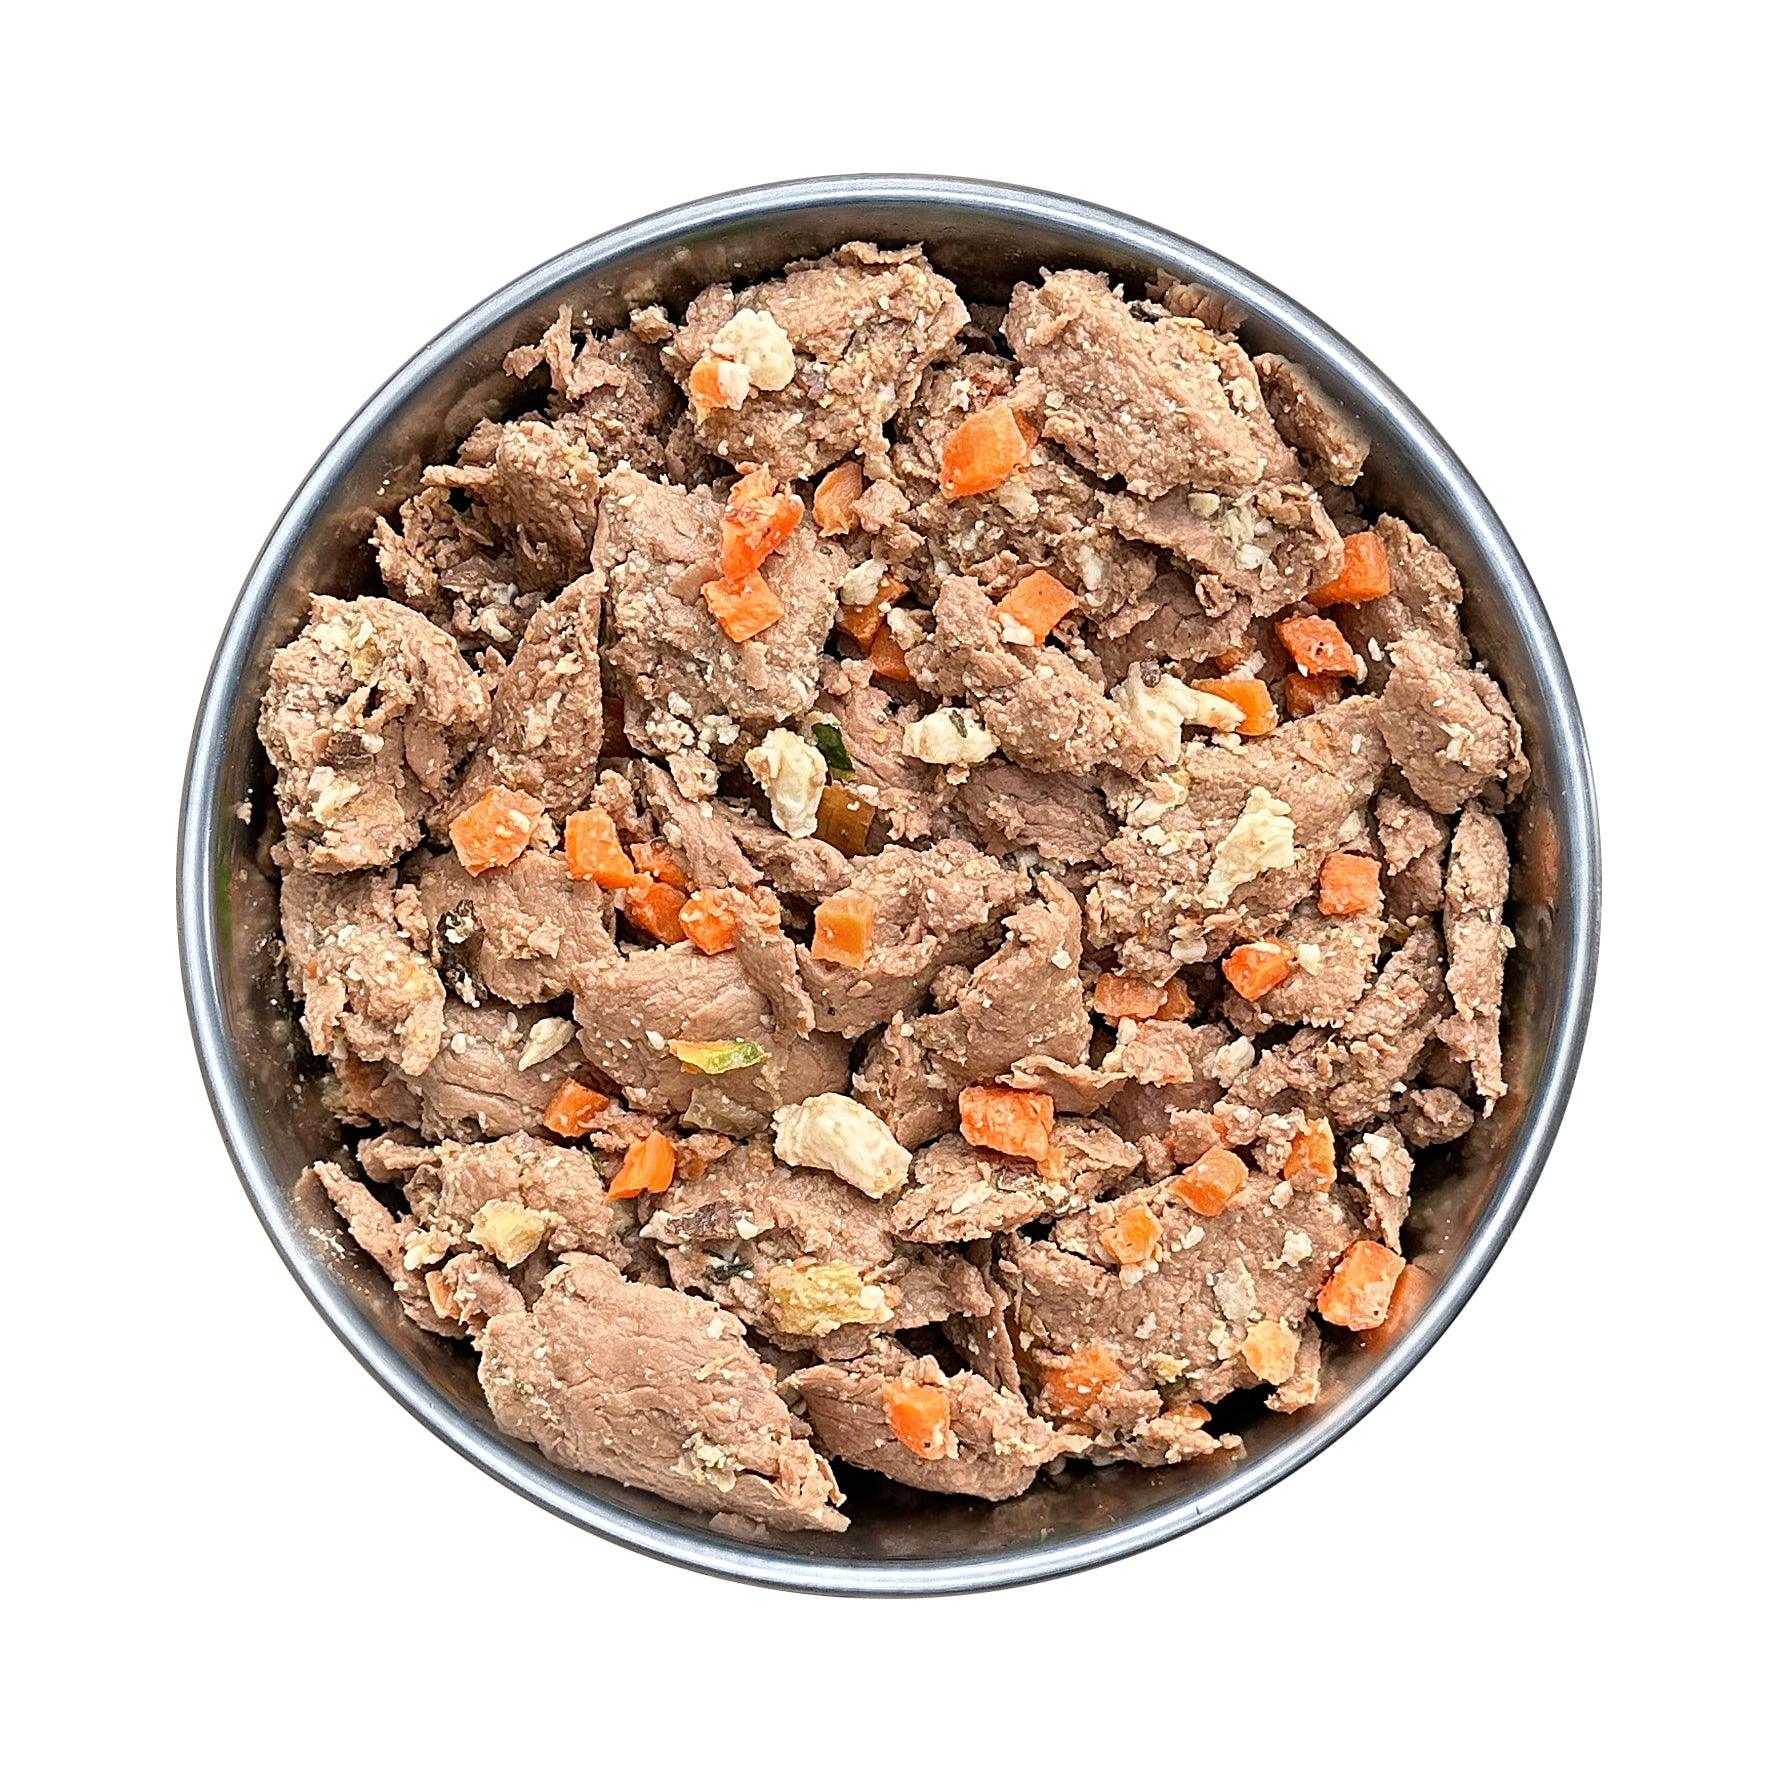 Probier-Glas: Frische-Menü Ziege mit Maniok, Karotten und Pfirsich (400g)